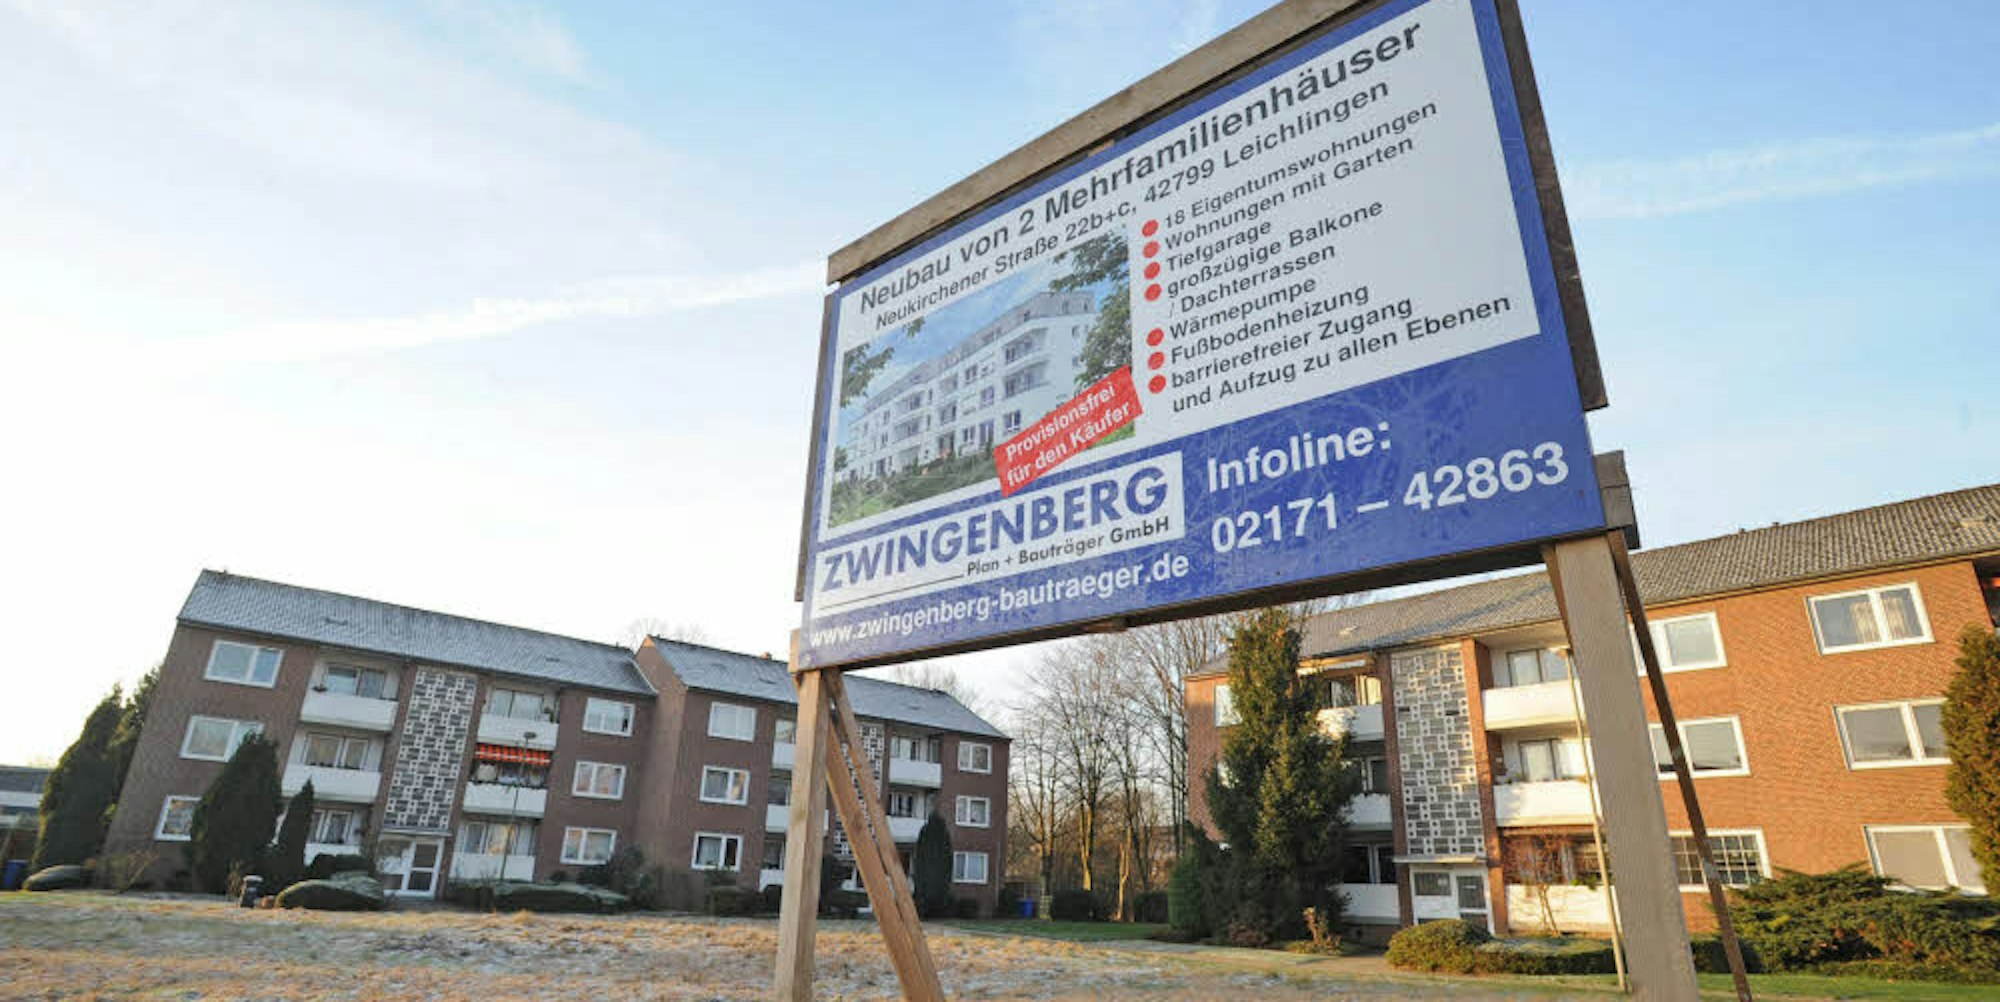 In erster Reihe vor den Siedlungshäusern entstehen entlang der Neukirchener Straße zwei Mehrfamilienhäuser.